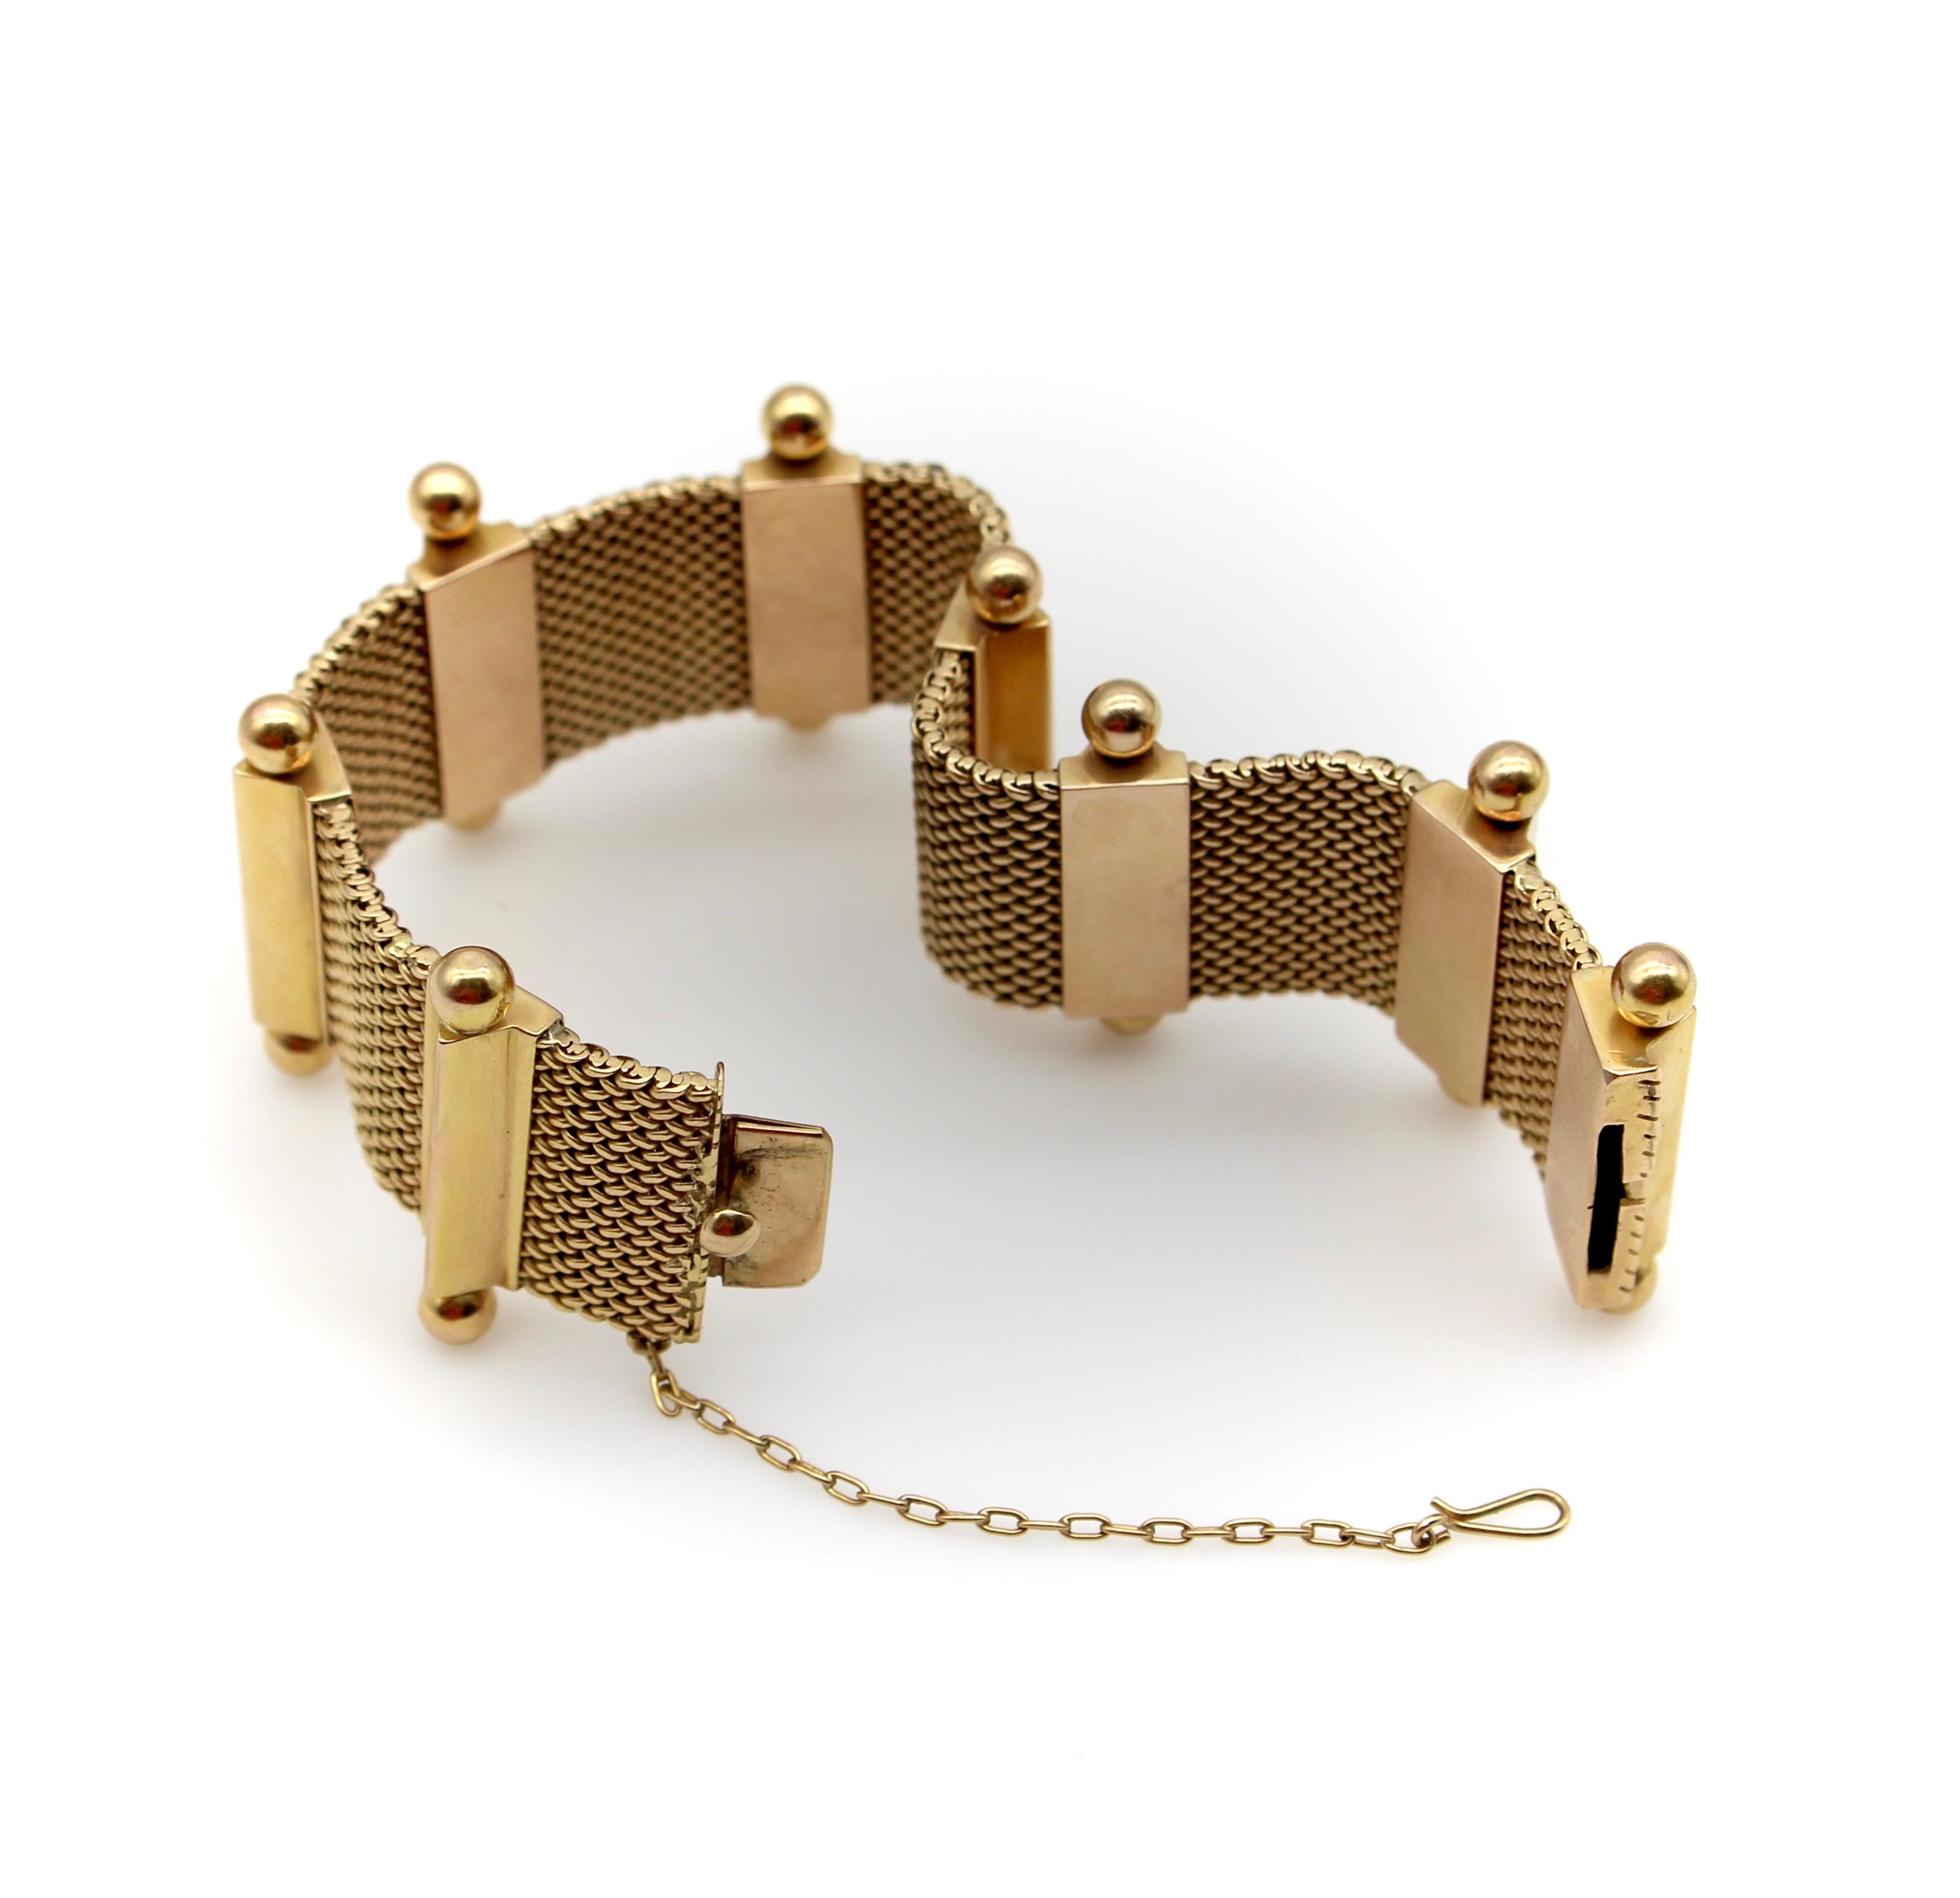 Ce bracelet en or 18 carats est composé de panneaux d'or tissés à la main, séparés par des barres triangulaires qui sont accentuées au sommet par des fleurons en forme de boule. Le bracelet présente plusieurs caractéristiques de conception qui le